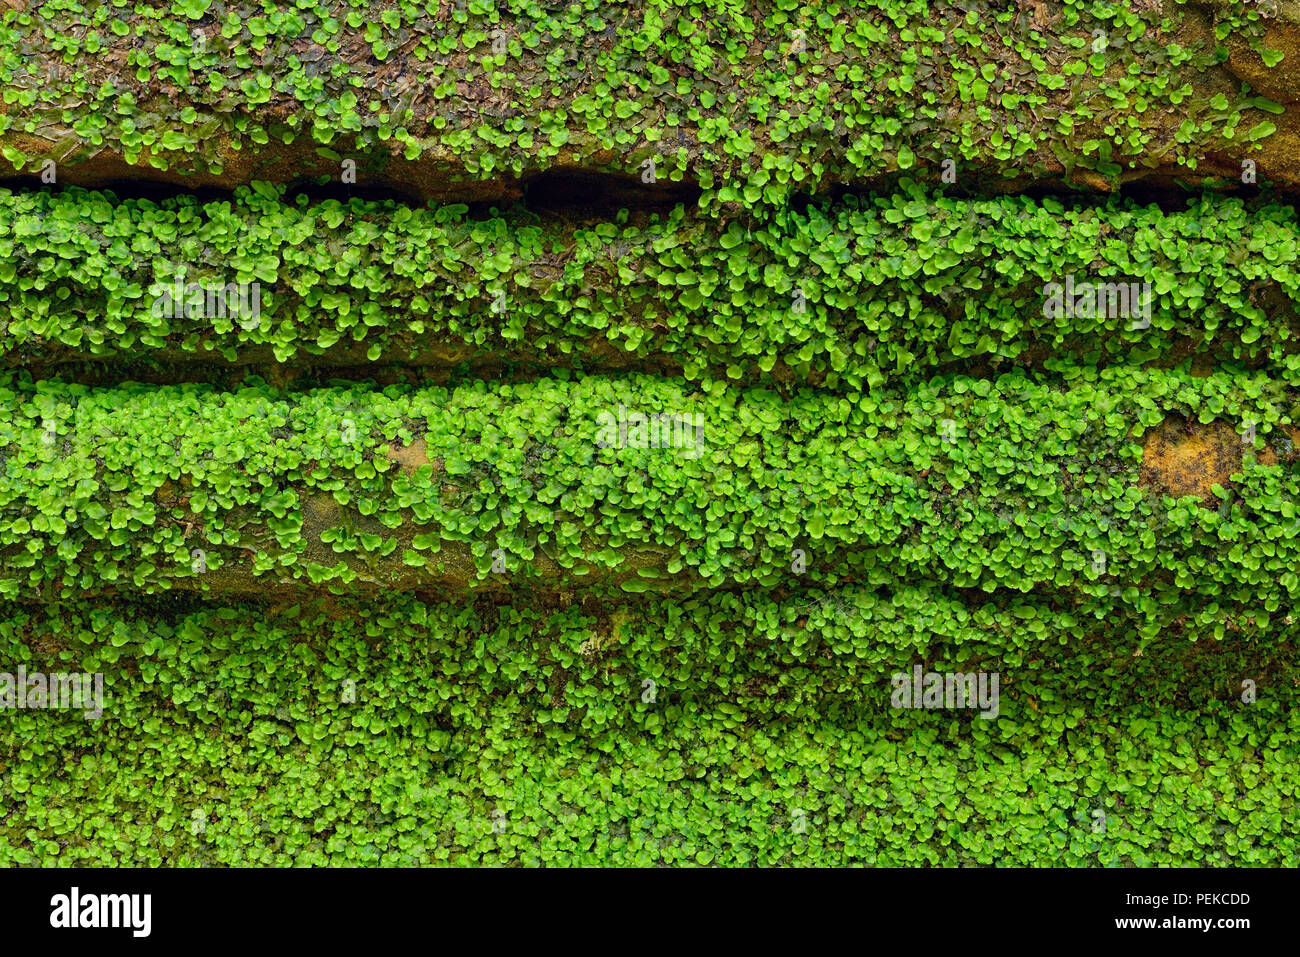 Vegetación que crece alrededor de las paredes de roca arenisca en la tenería Creek Canyon, Alger County, cerca de Munising, Michigan, EE.UU. Foto de stock